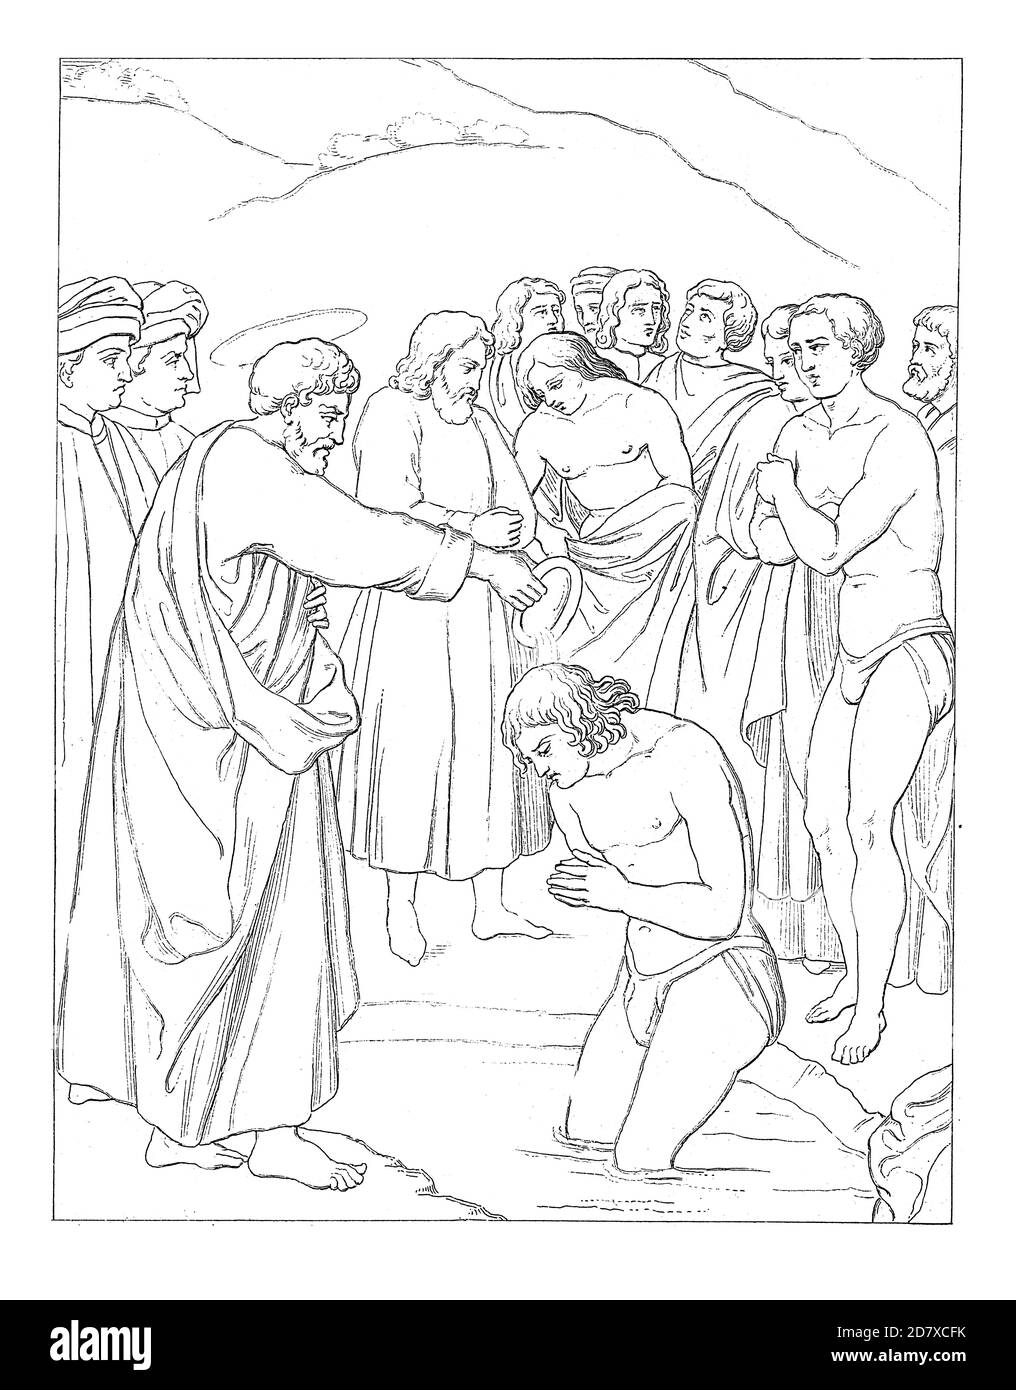 Antica incisione raffigurante il Battesimo dei neofiti di Masaccio, pittore rinascimentale italiano (1401 - 1428). Illustrazione pubblicata in Systematisc Foto Stock